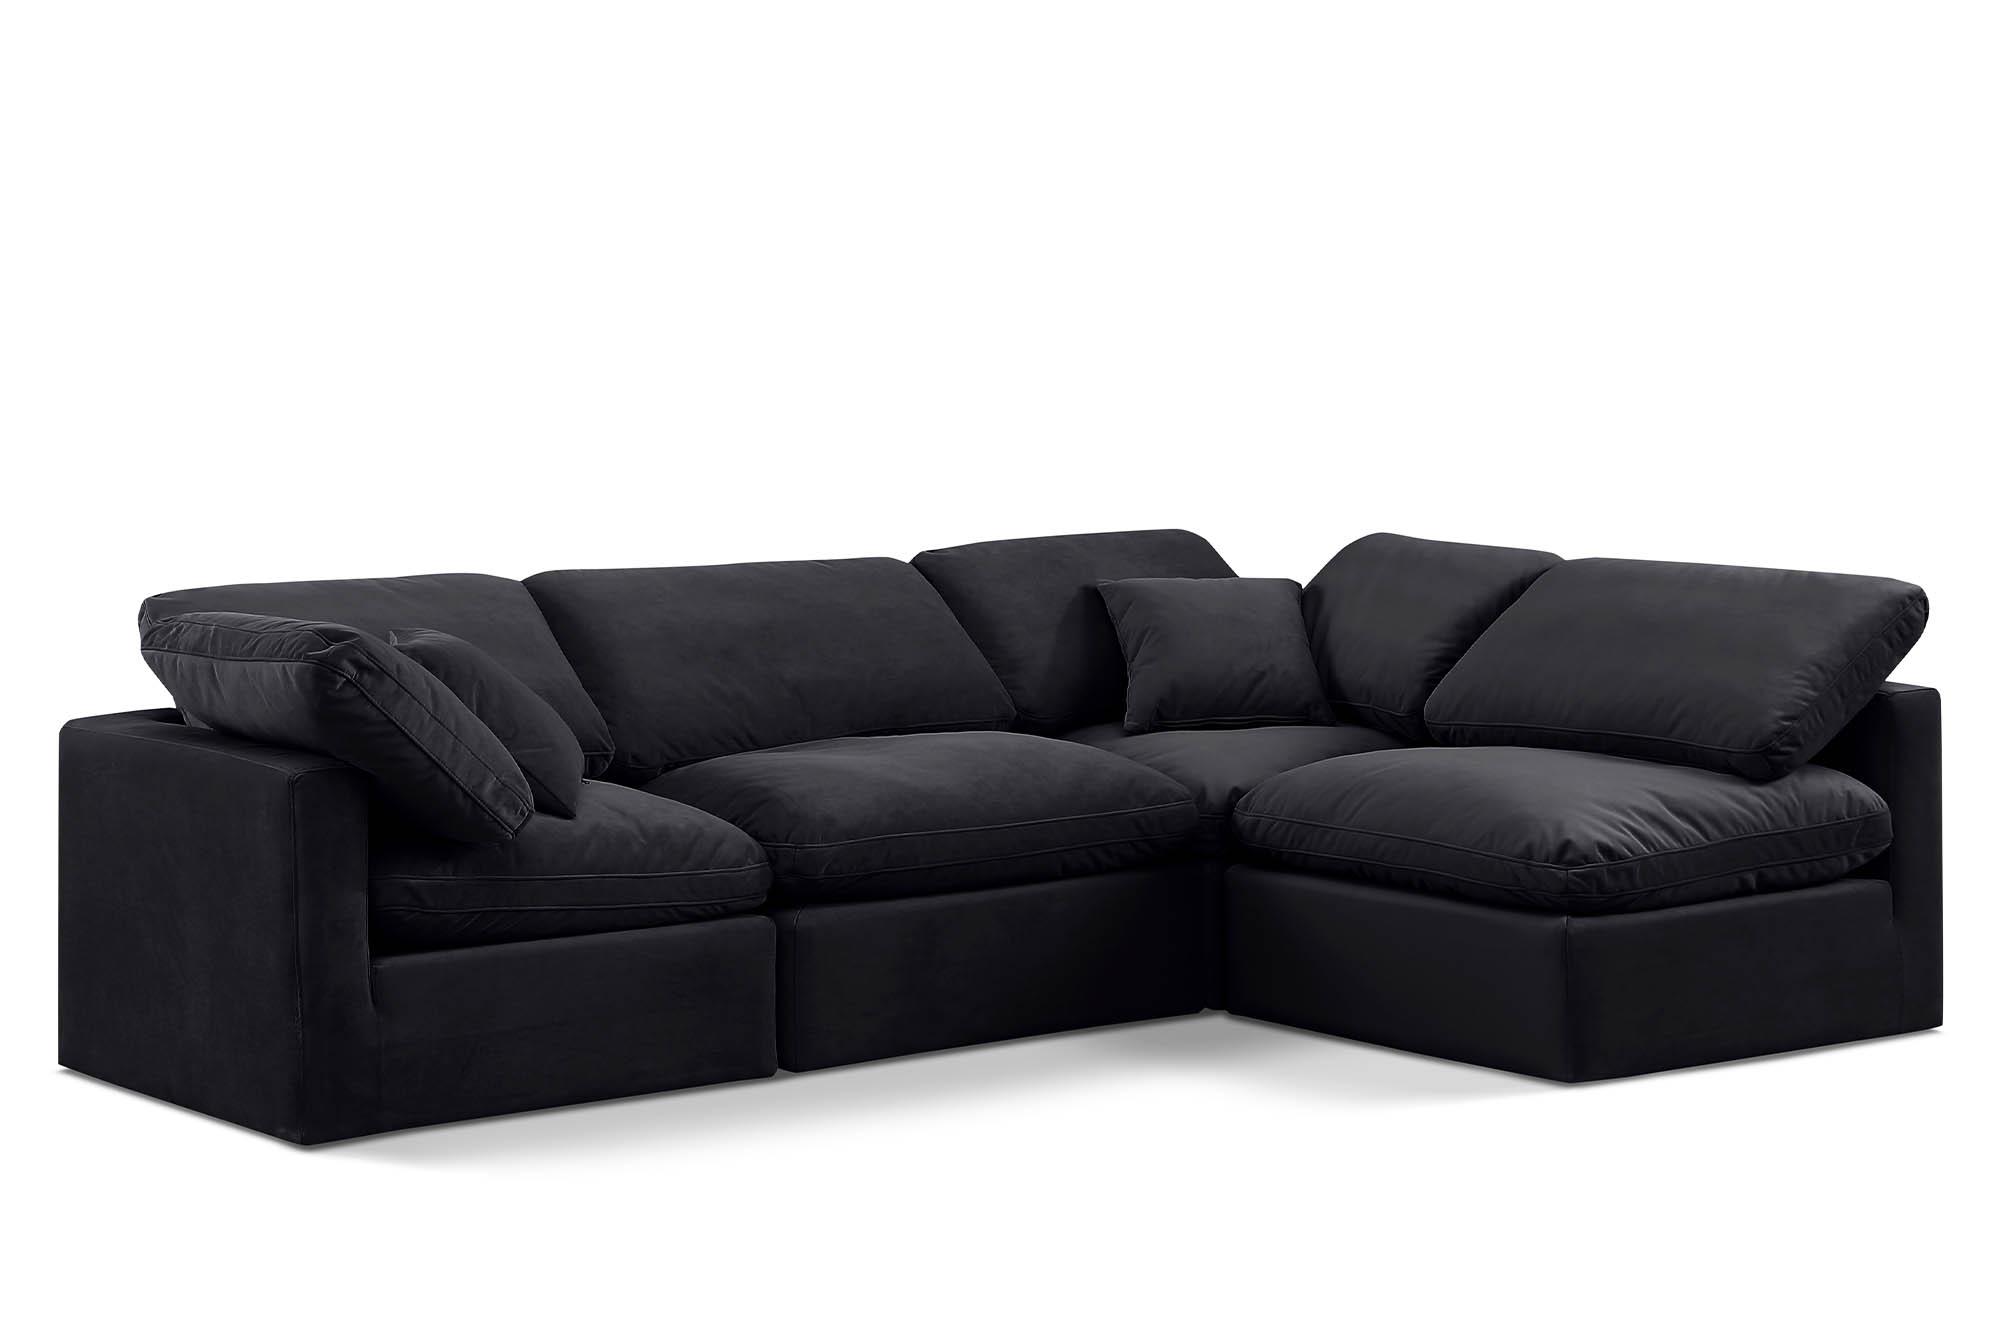 Contemporary, Modern Modular Sectional Sofa INDULGE 147Black-Sec4B 147Black-Sec4B in Black Velvet